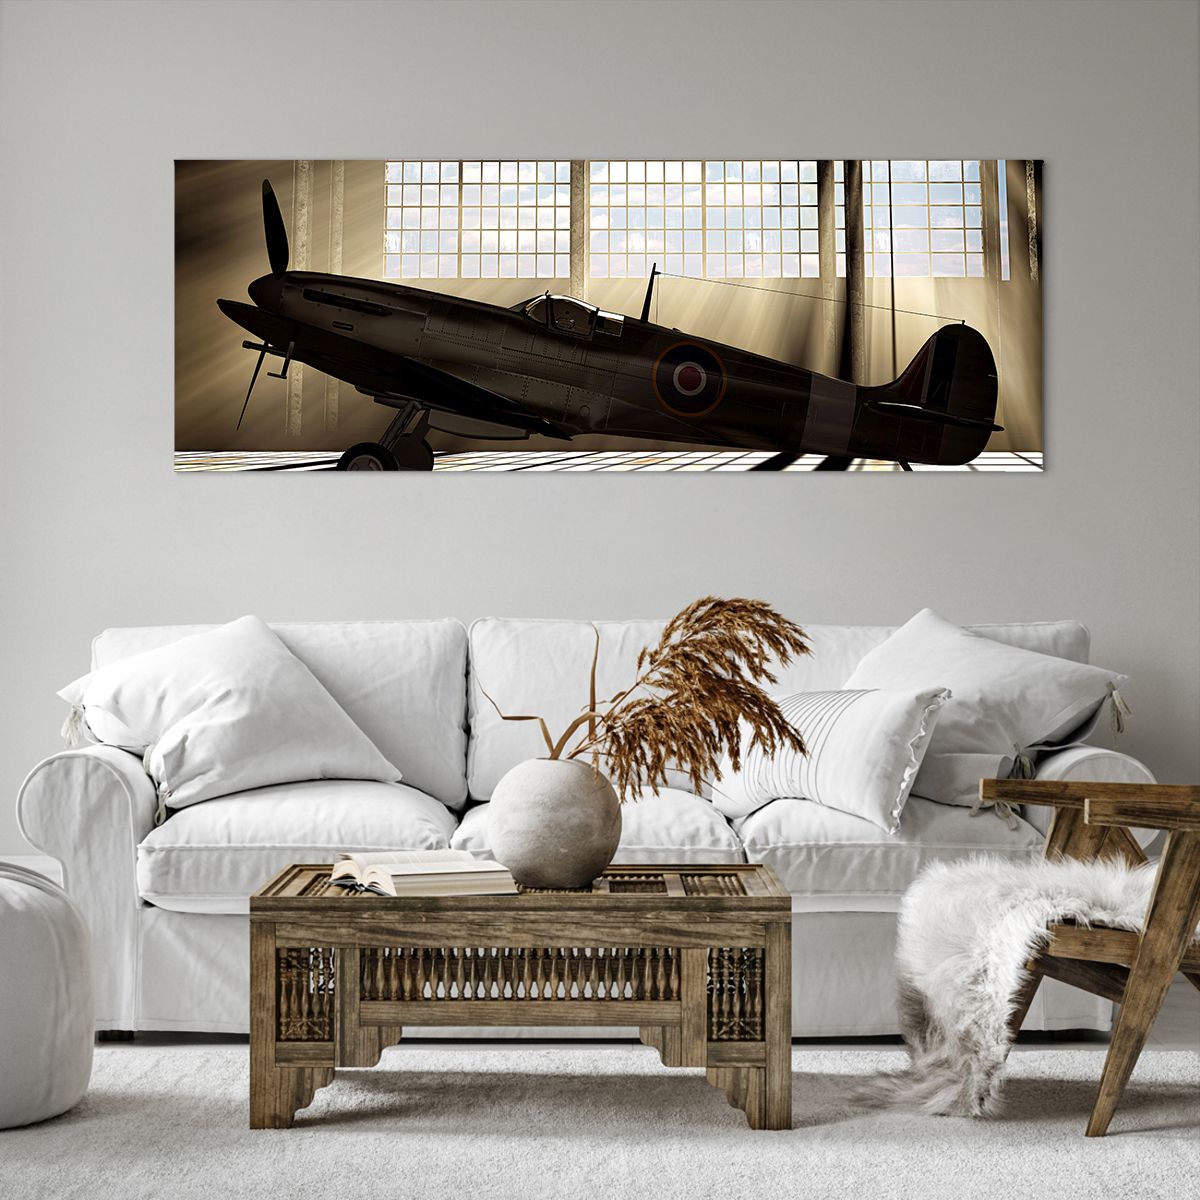 Obrazy na płótnie Lotnictwo, Obrazy na płótnie Hangar Lotniczy, Obrazy na płótnie Samolot, Obrazy na płótnie Legenda, Obrazy na płótnie Podróże